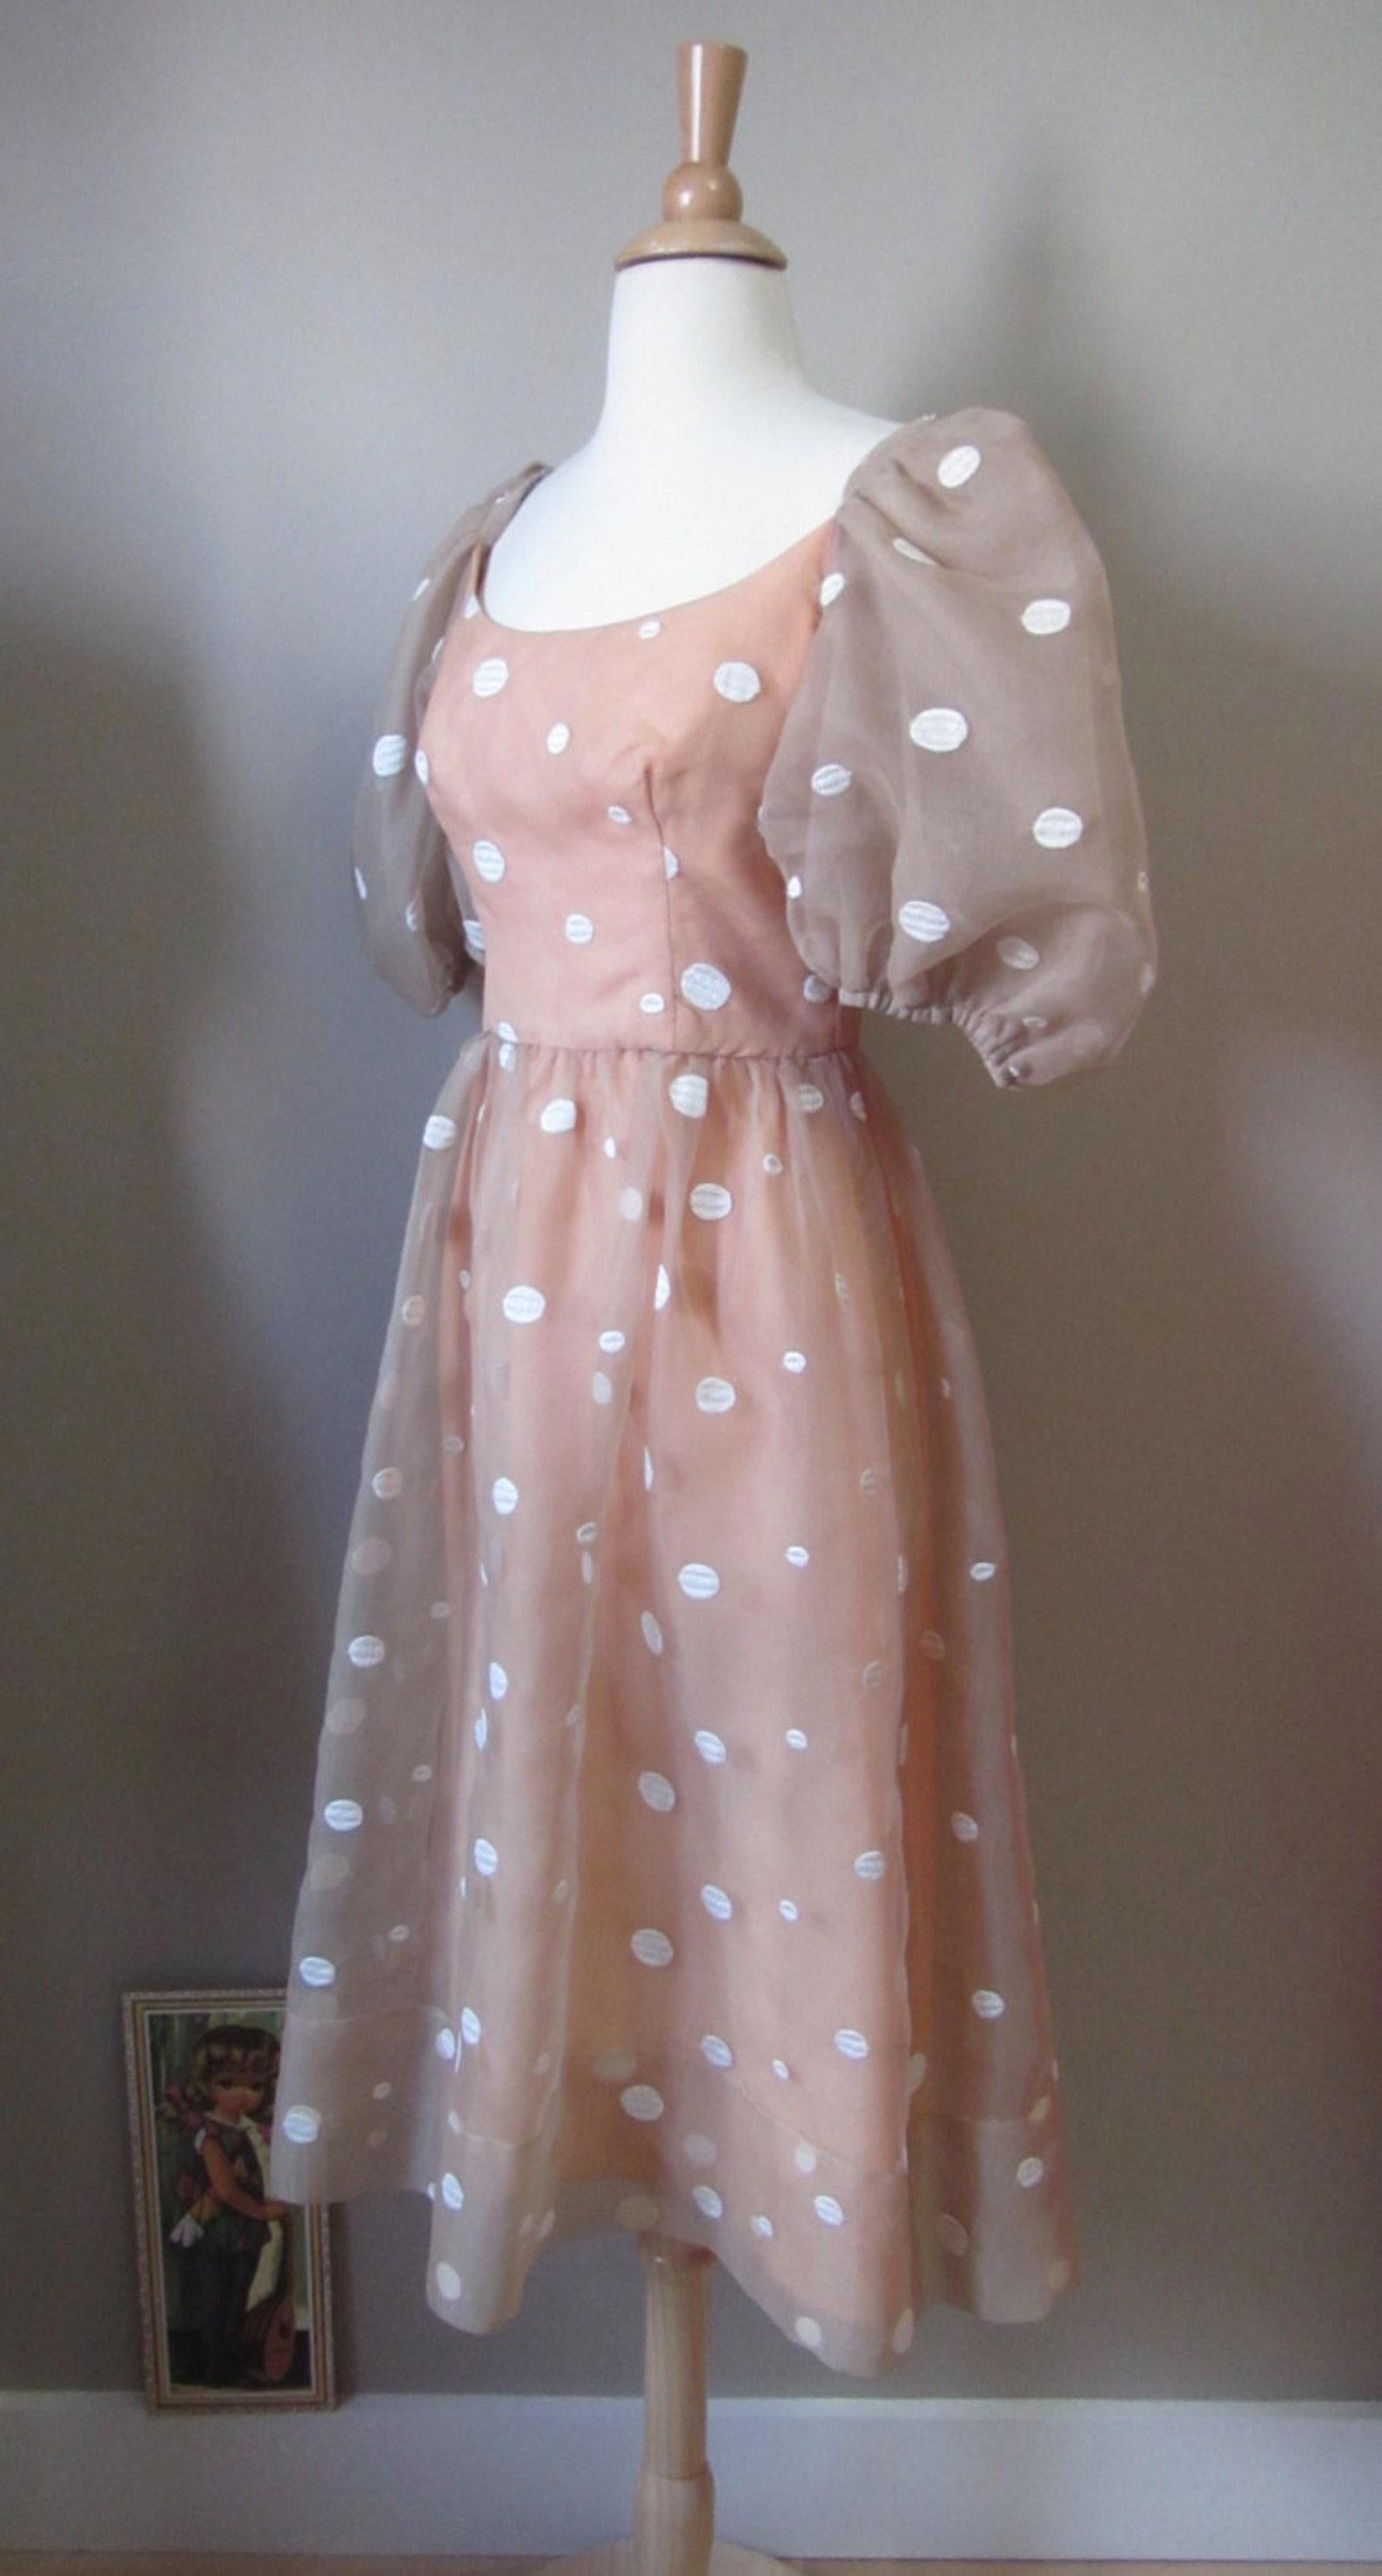 Lillie Rubin Polka Dot Dress, Circa 1980s For Sale 1